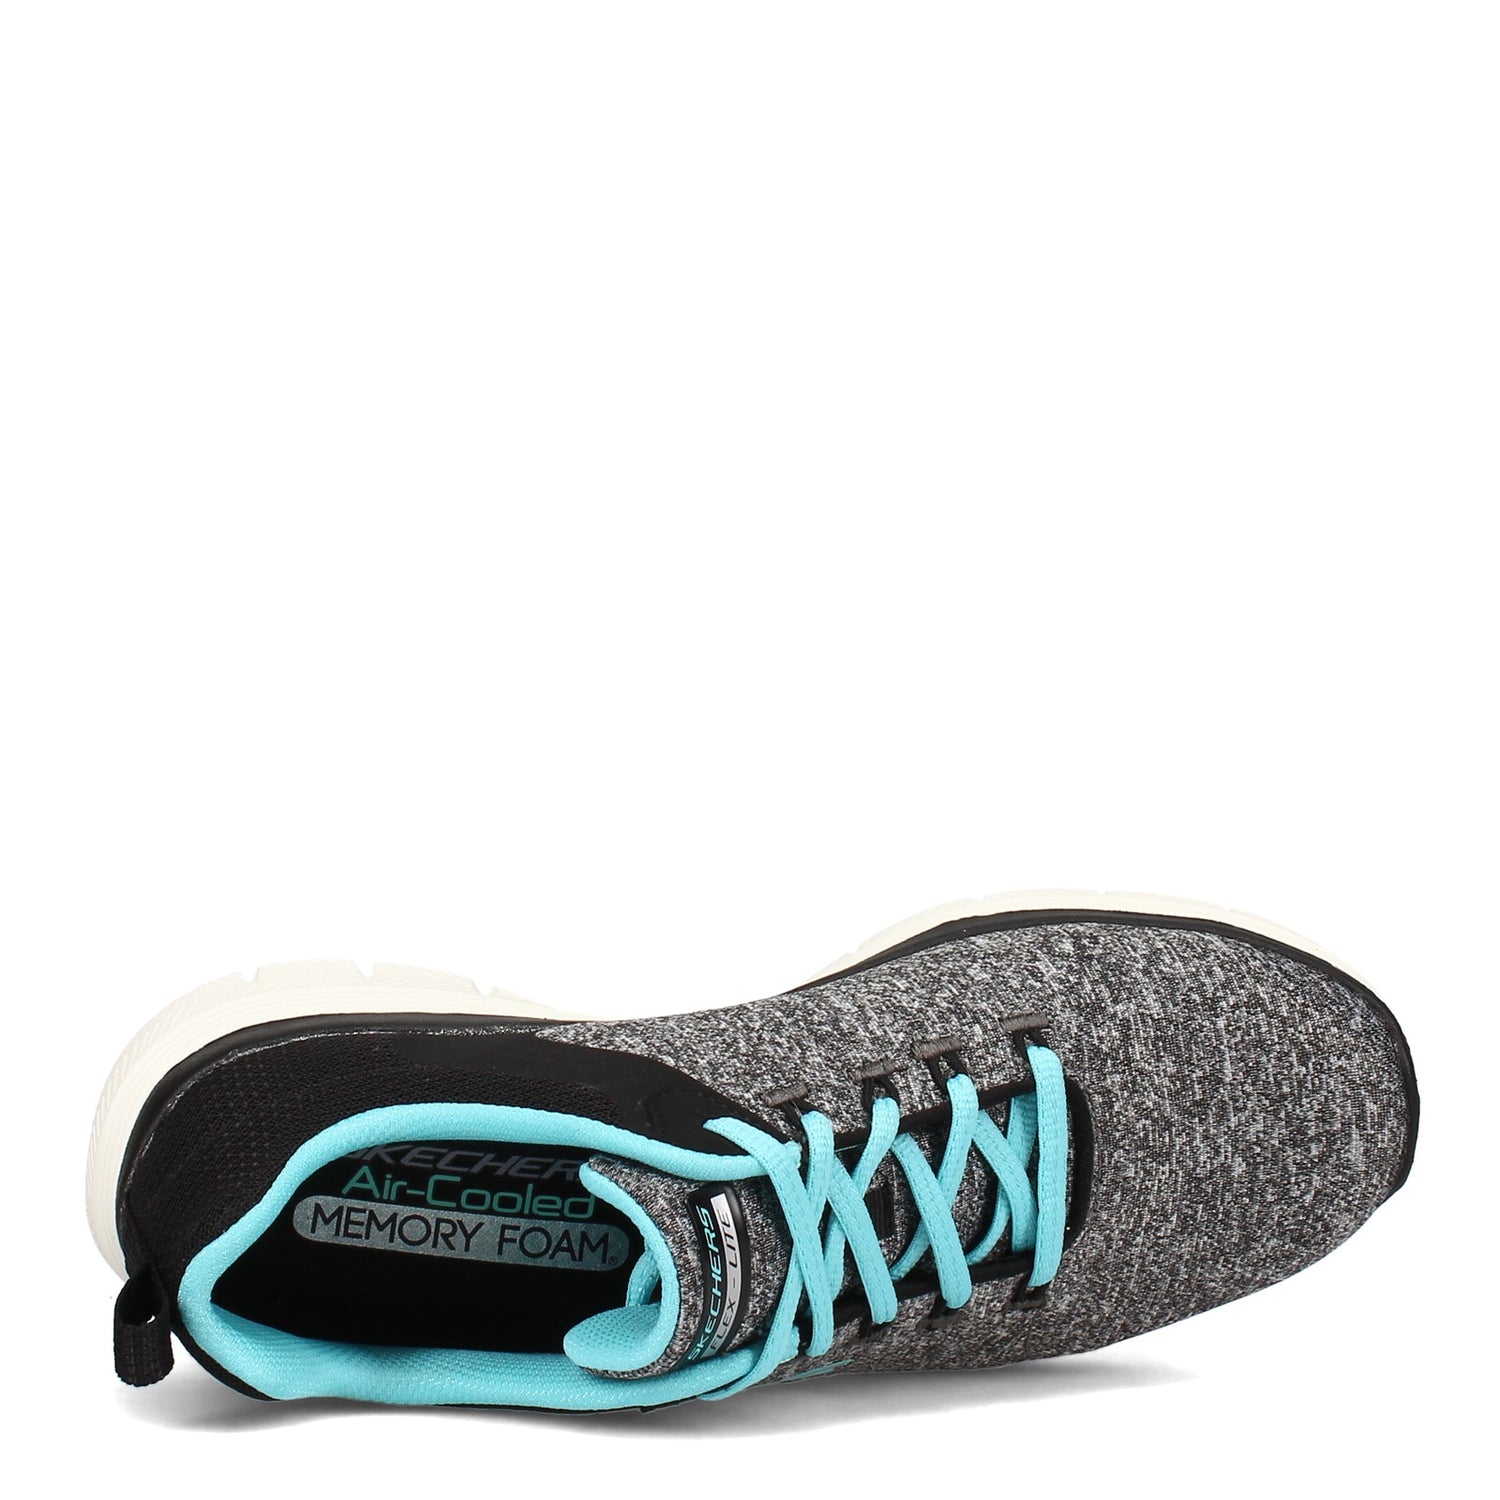 Peltz Shoes  Women's Skechers Flex Appeal 4.0 Sneaker BLACK / BLUE 149307-BKLB